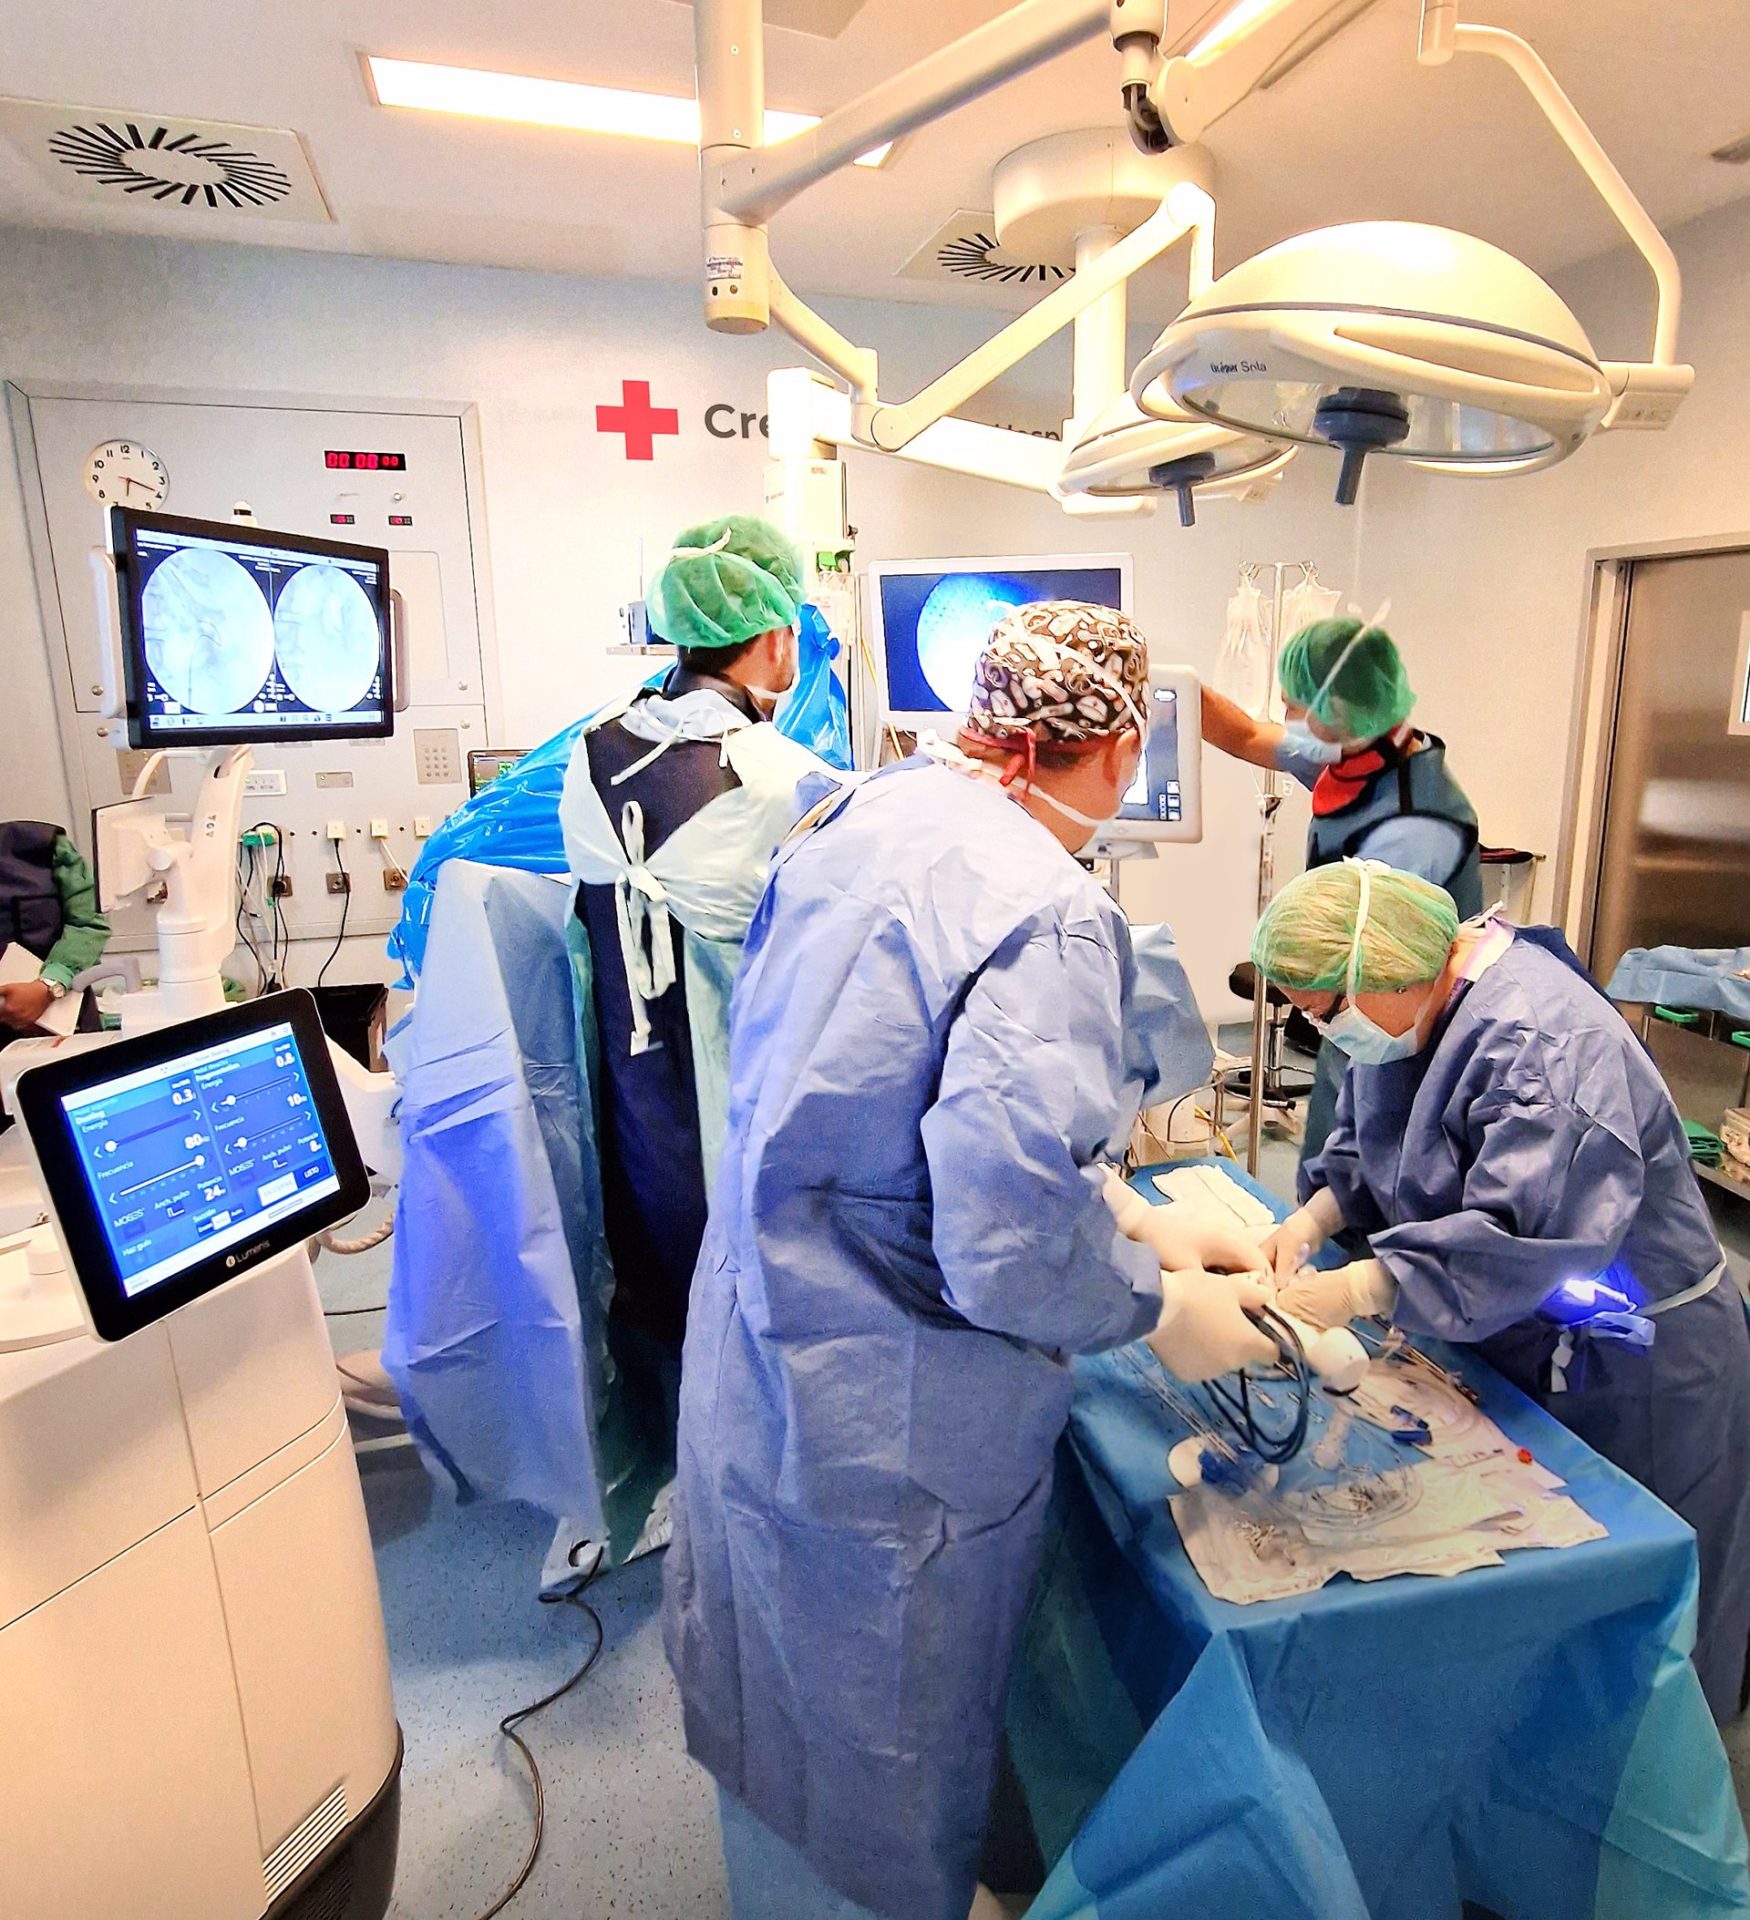 El Hospital de Cruz Roja en Palma incorpora el Láser Holmium - CRUZ ROJA